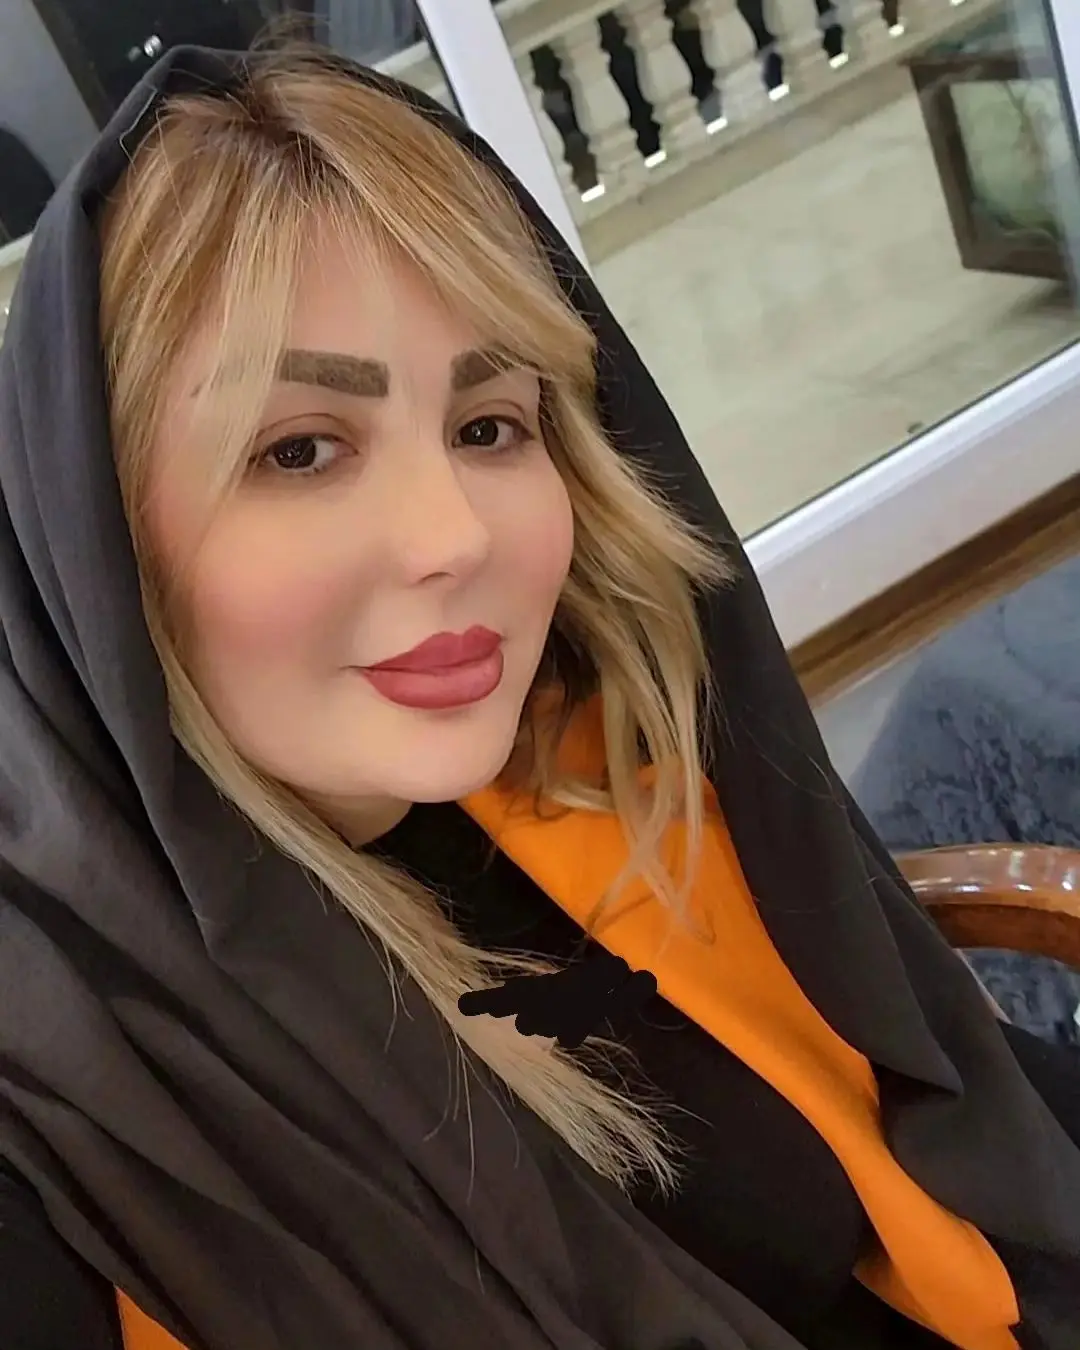 نیوشا ضیغمی بازیگر مطرح و سرشناس ایرانی عکسی را از خود رد اینستاگرام منتشر کرد که نشان می دهد چهره او بعد کلی جراحی به کلی زیر و رو شده است.